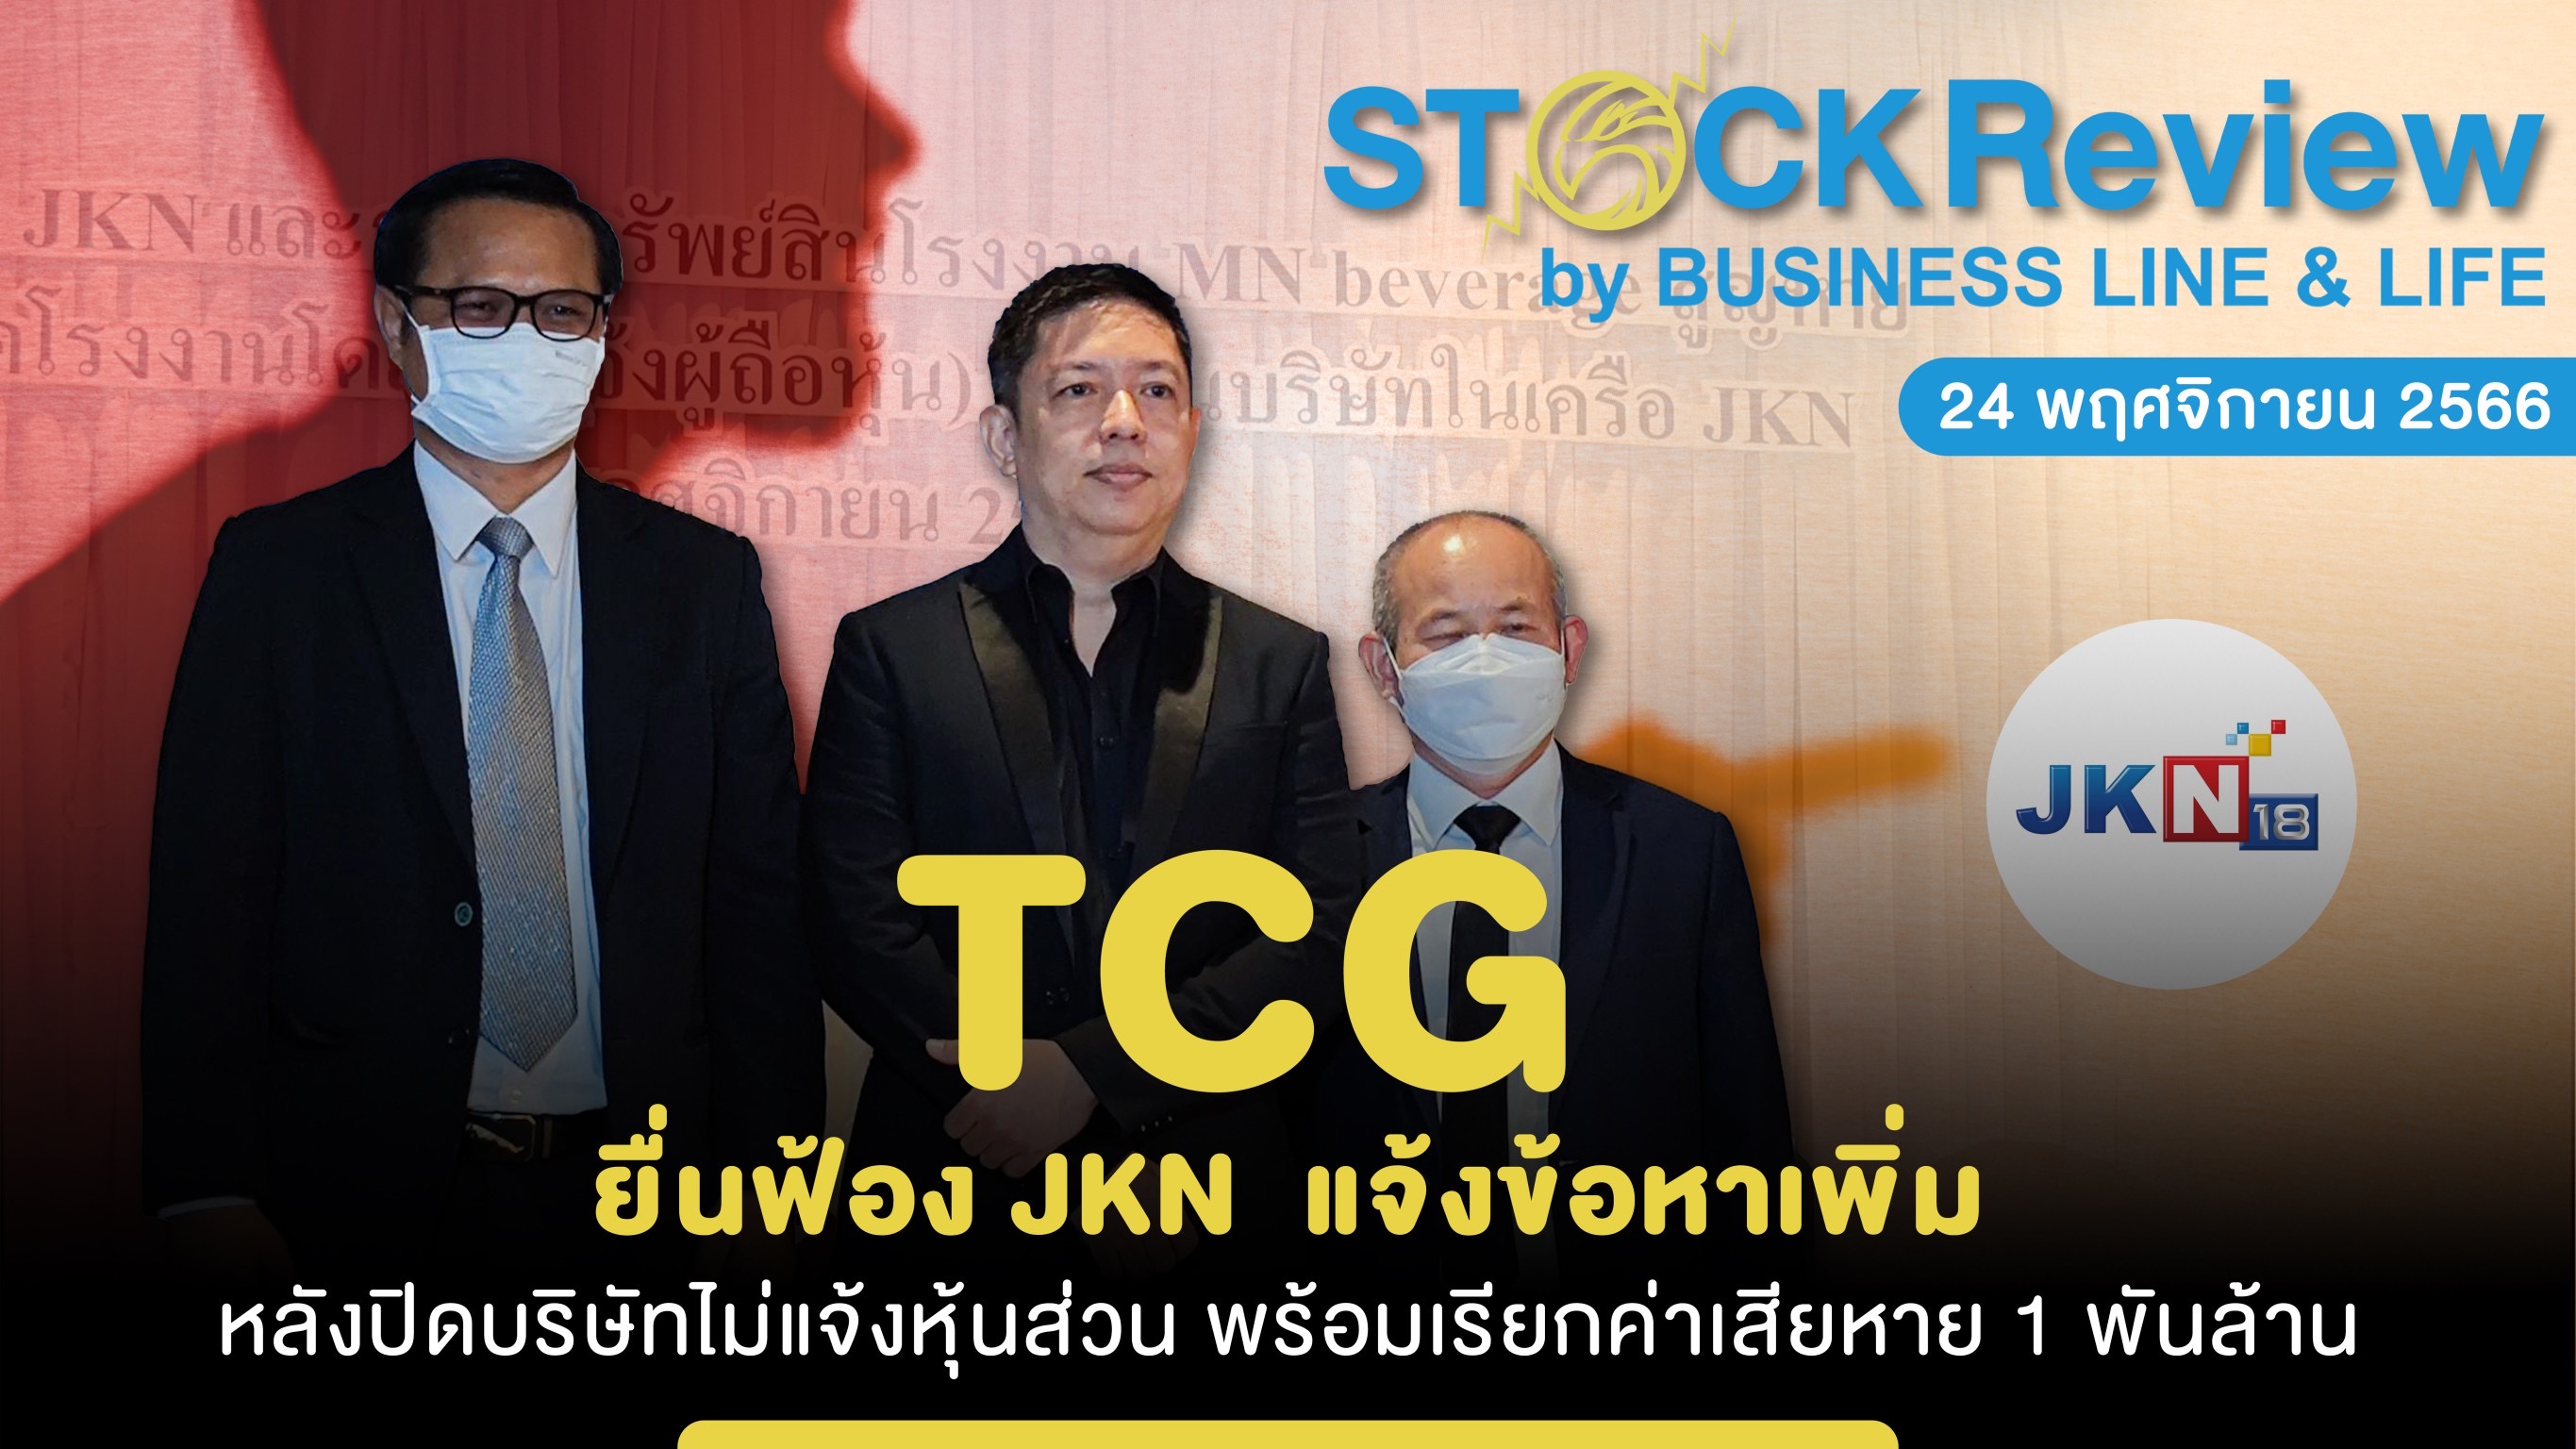 TCG ยื่นฟ้อง JKN  แจ้งข้อหาเพิ่ม หลังปิดบริษัทไม่แจ้งหุ้นส่วน พร้อมเรียกค่าเสียหาย 1 พันล้าน